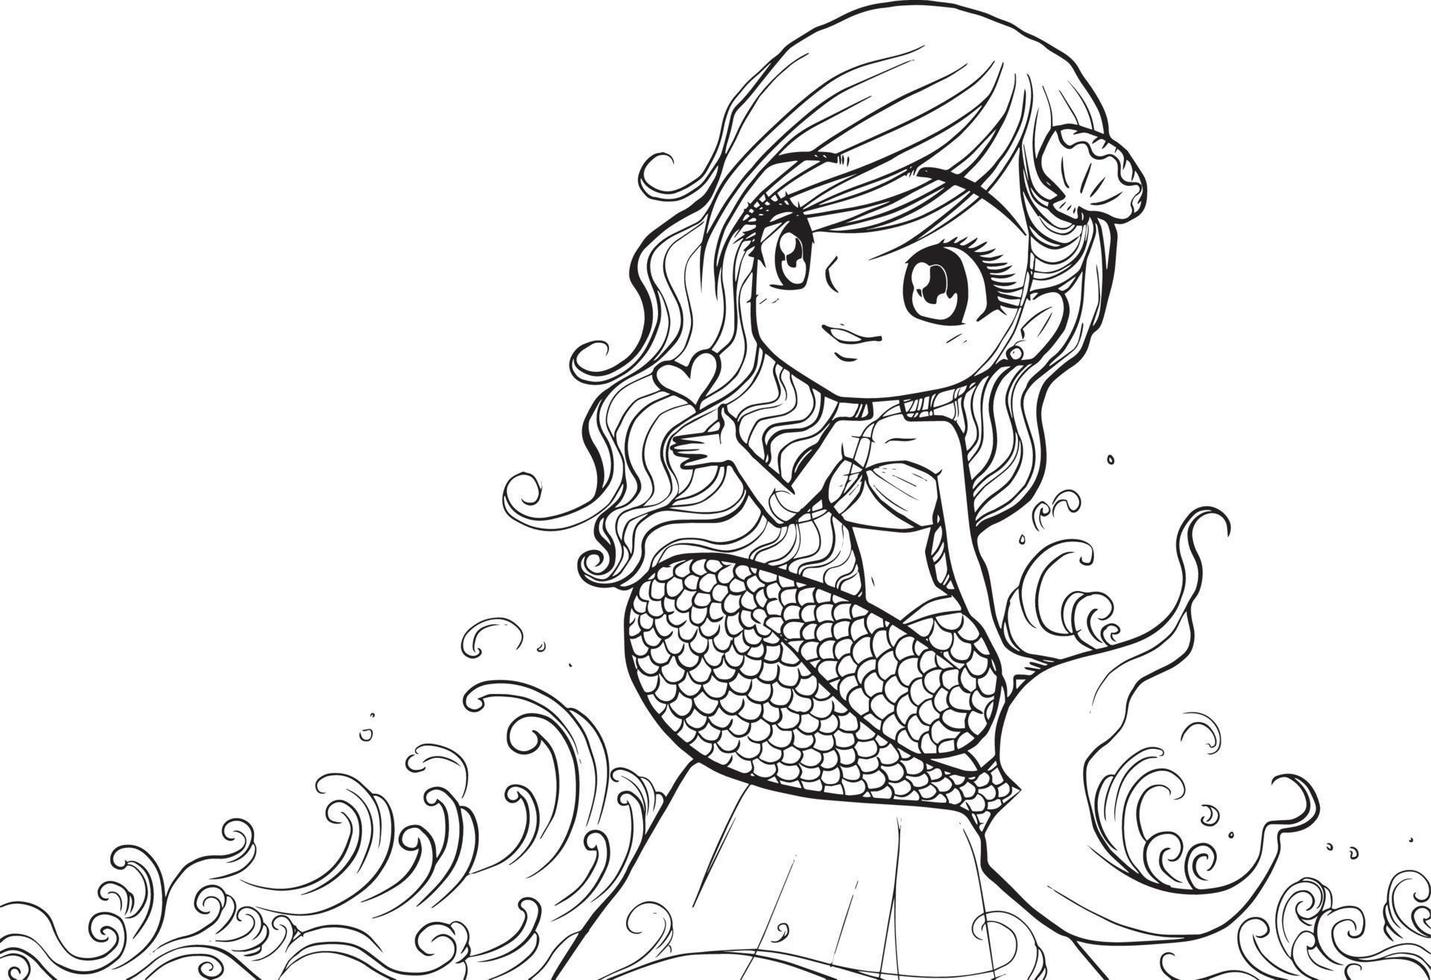 página para colorear niña kawaii anime lindo dibujos animados ilustración clipart dibujo adorable manga descarga gratuita vector